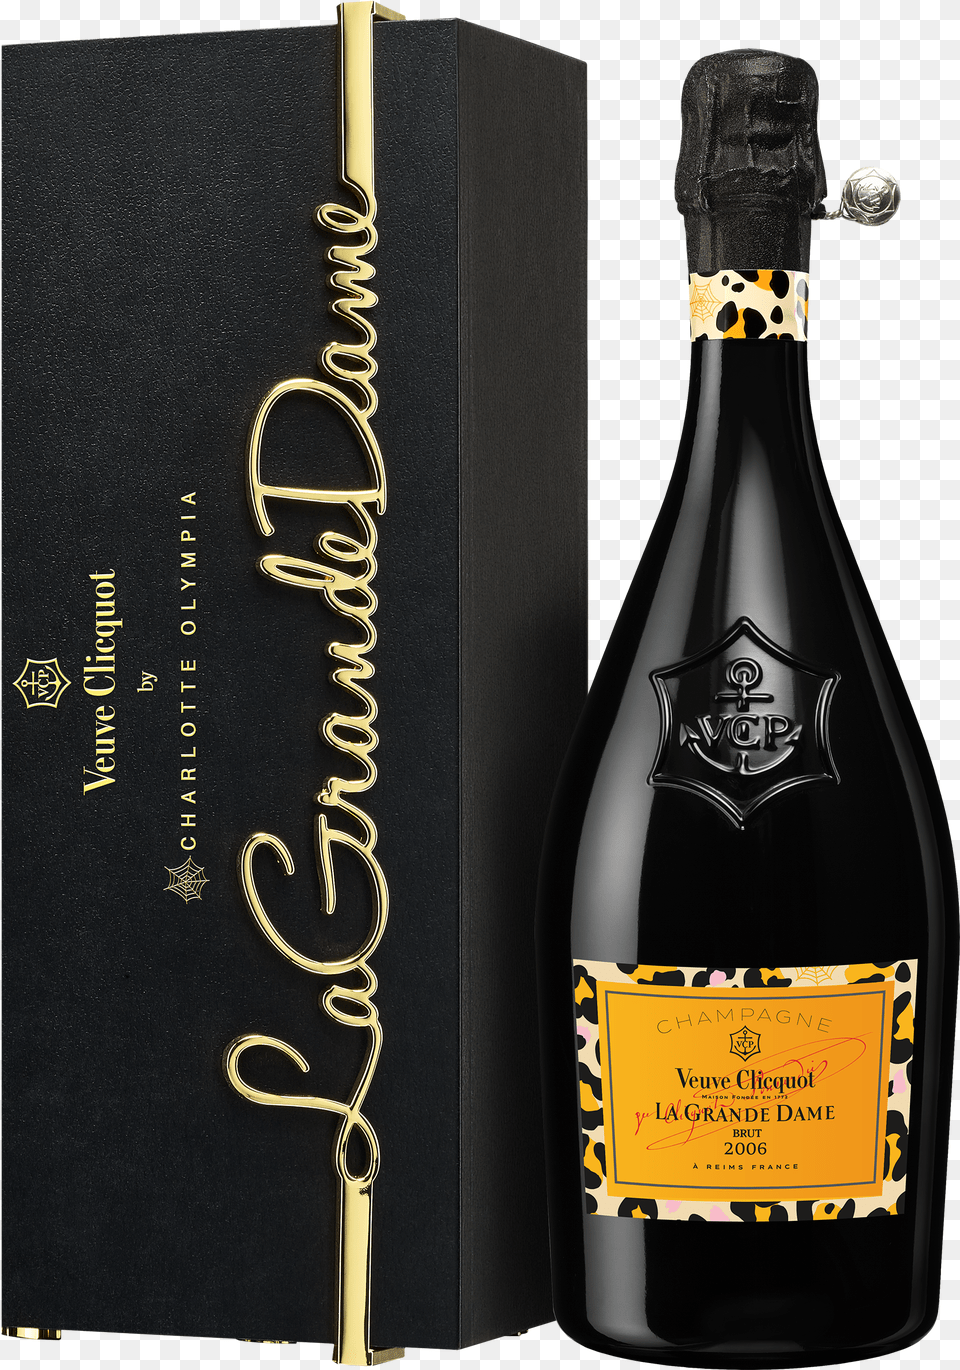 Transparent Liquor Bottles Champagne Veuve Clicquot La Grande Dame Png Image